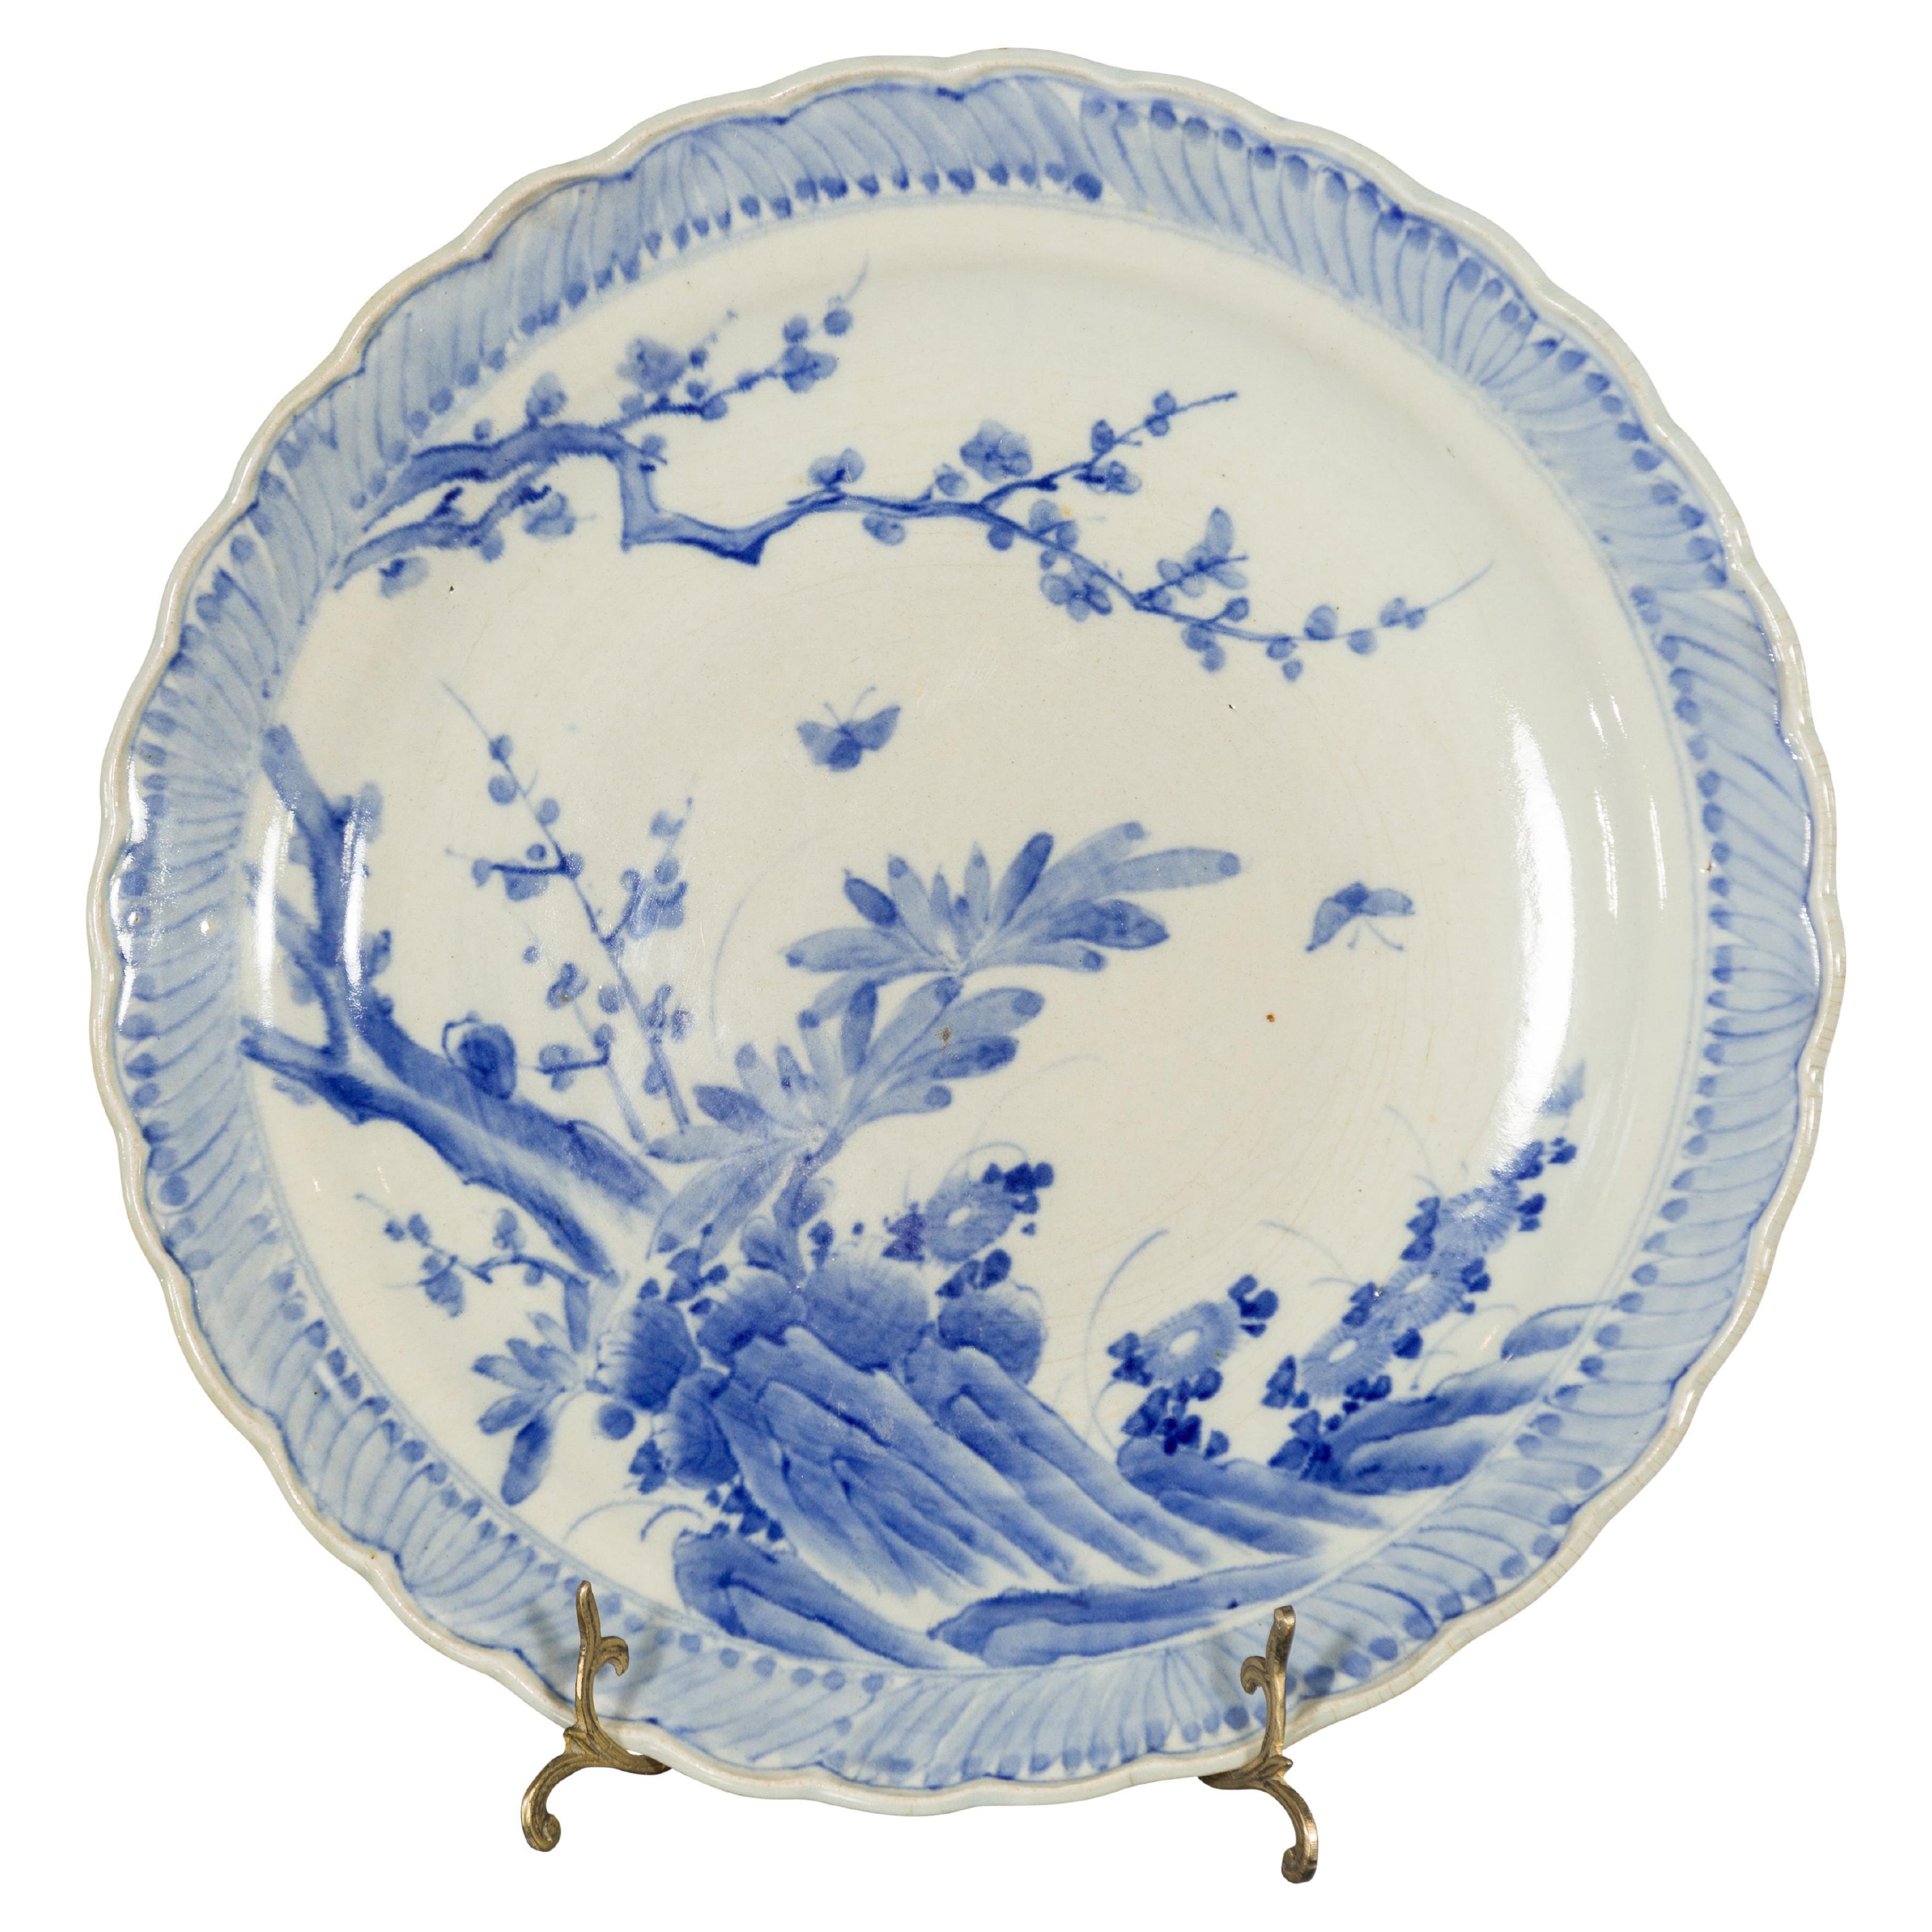 Assiette de présentation japonaise en porcelaine bleue et blanche peinte à la main avec décor de feuillage